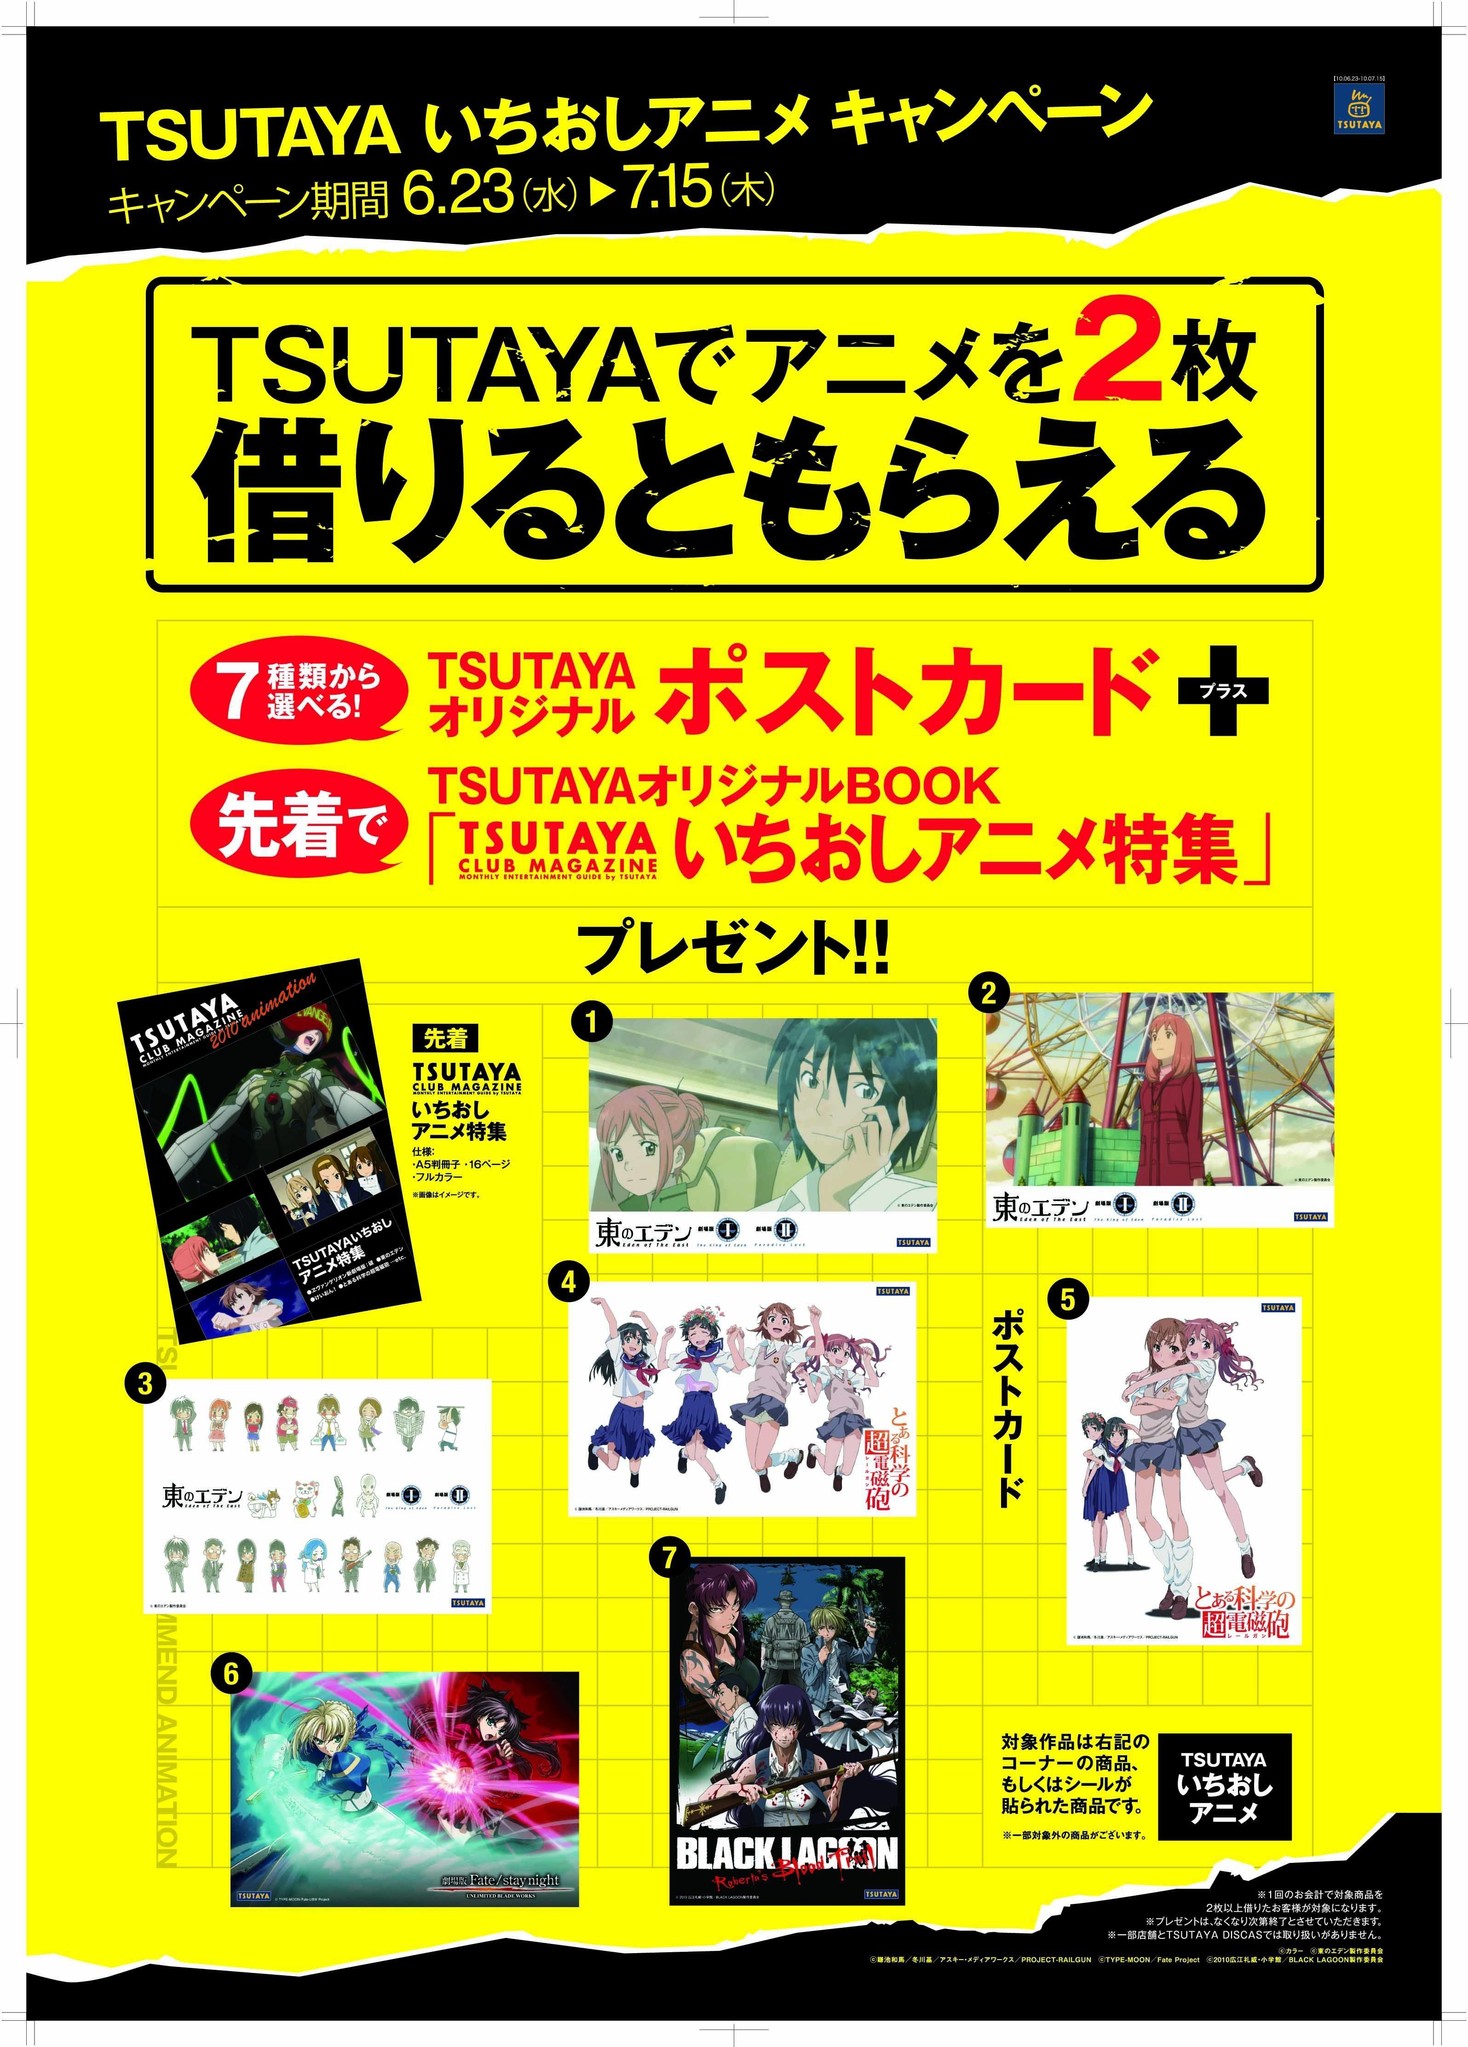 対象アニメ作品を2枚以上レンタルでtsutayaオリジナルポストカードがもらえる Tsutaya いちおしアニメキャンペーン 実施中 Cccmkhdのプレスリリース